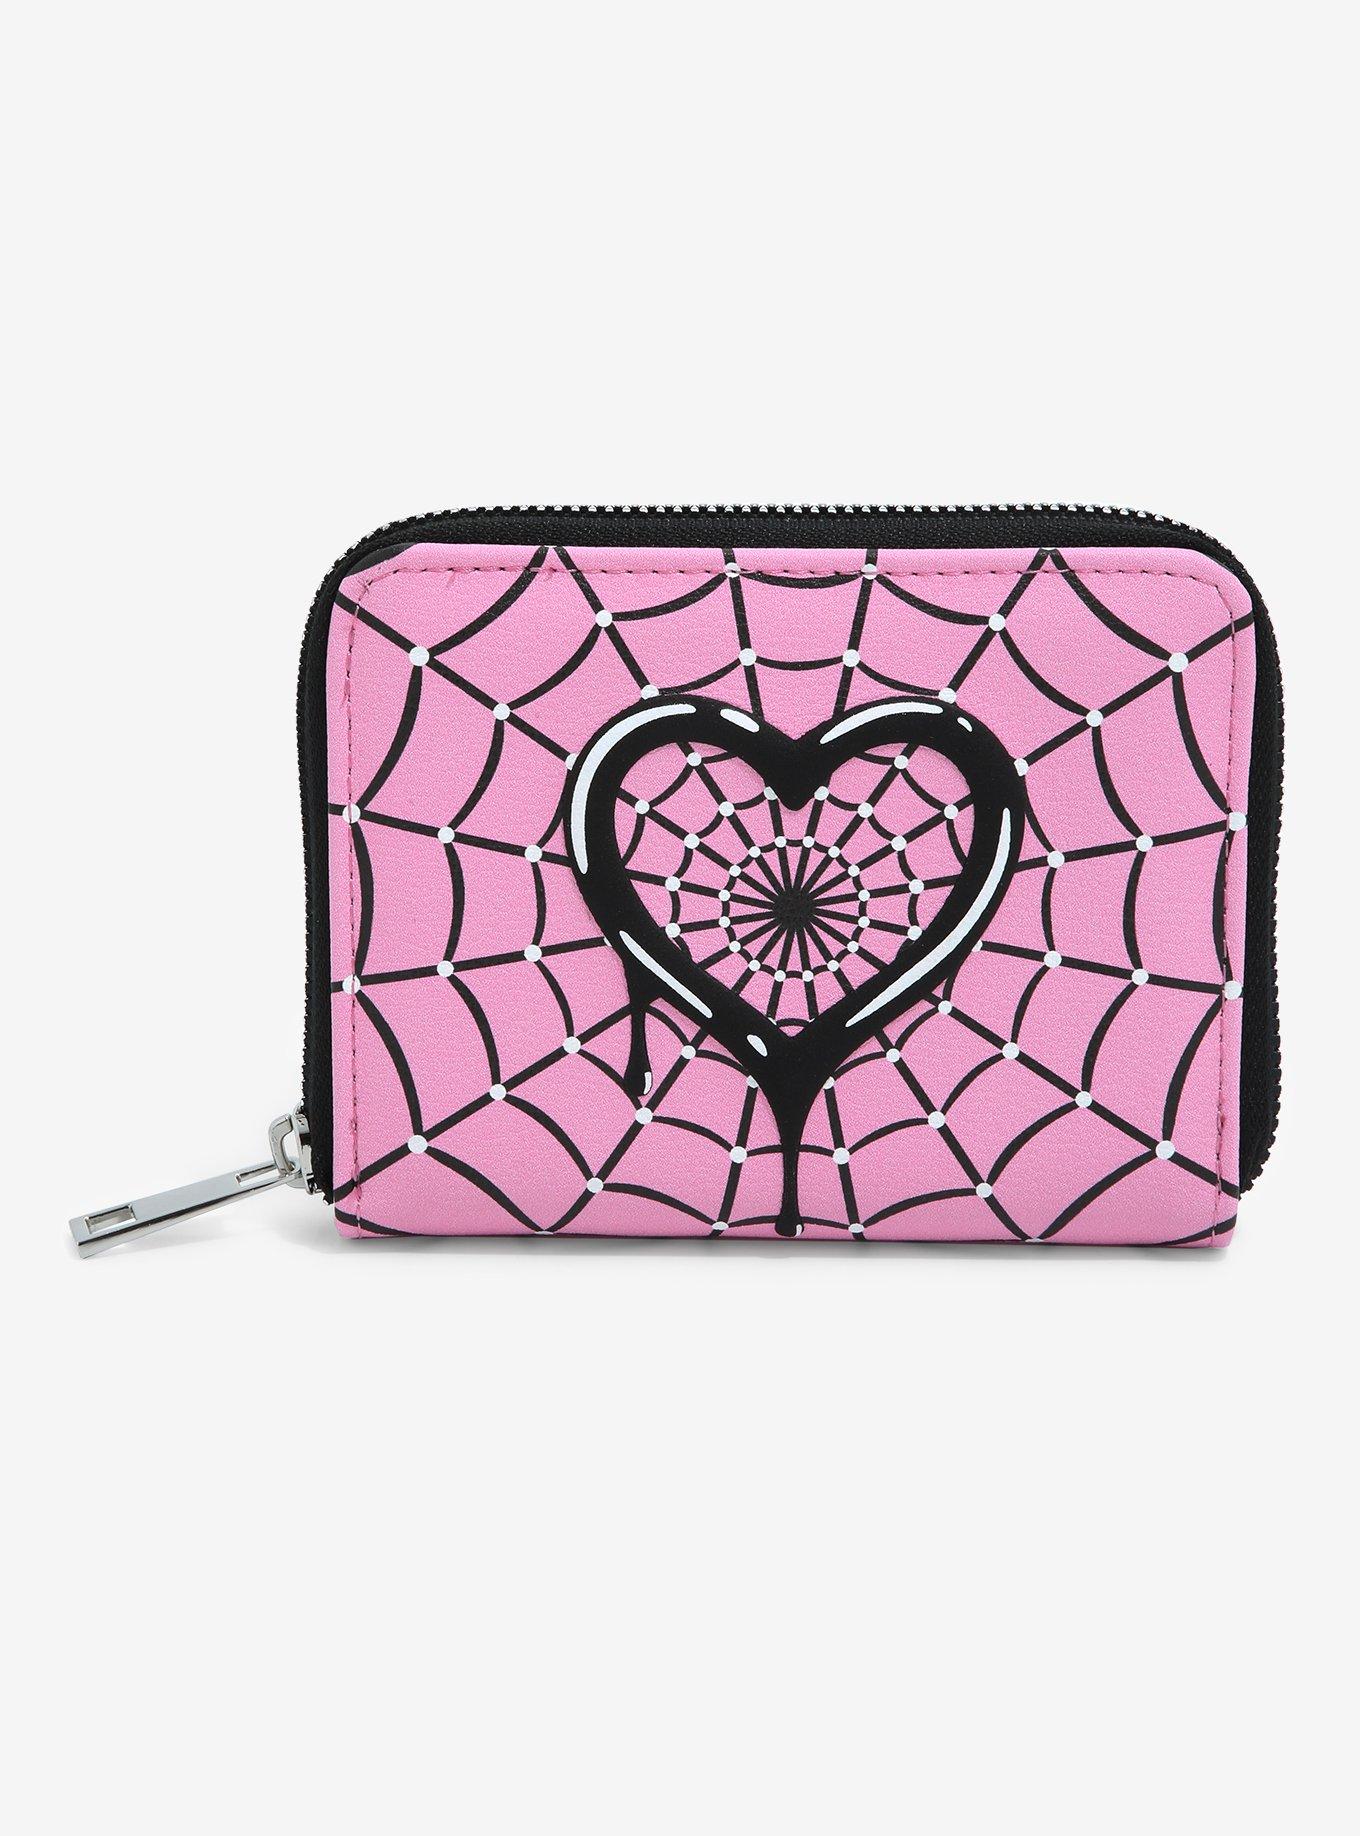 VSCO - ashlep  Louis vuitton coin purse, Cute wallets, Girly car  accessories